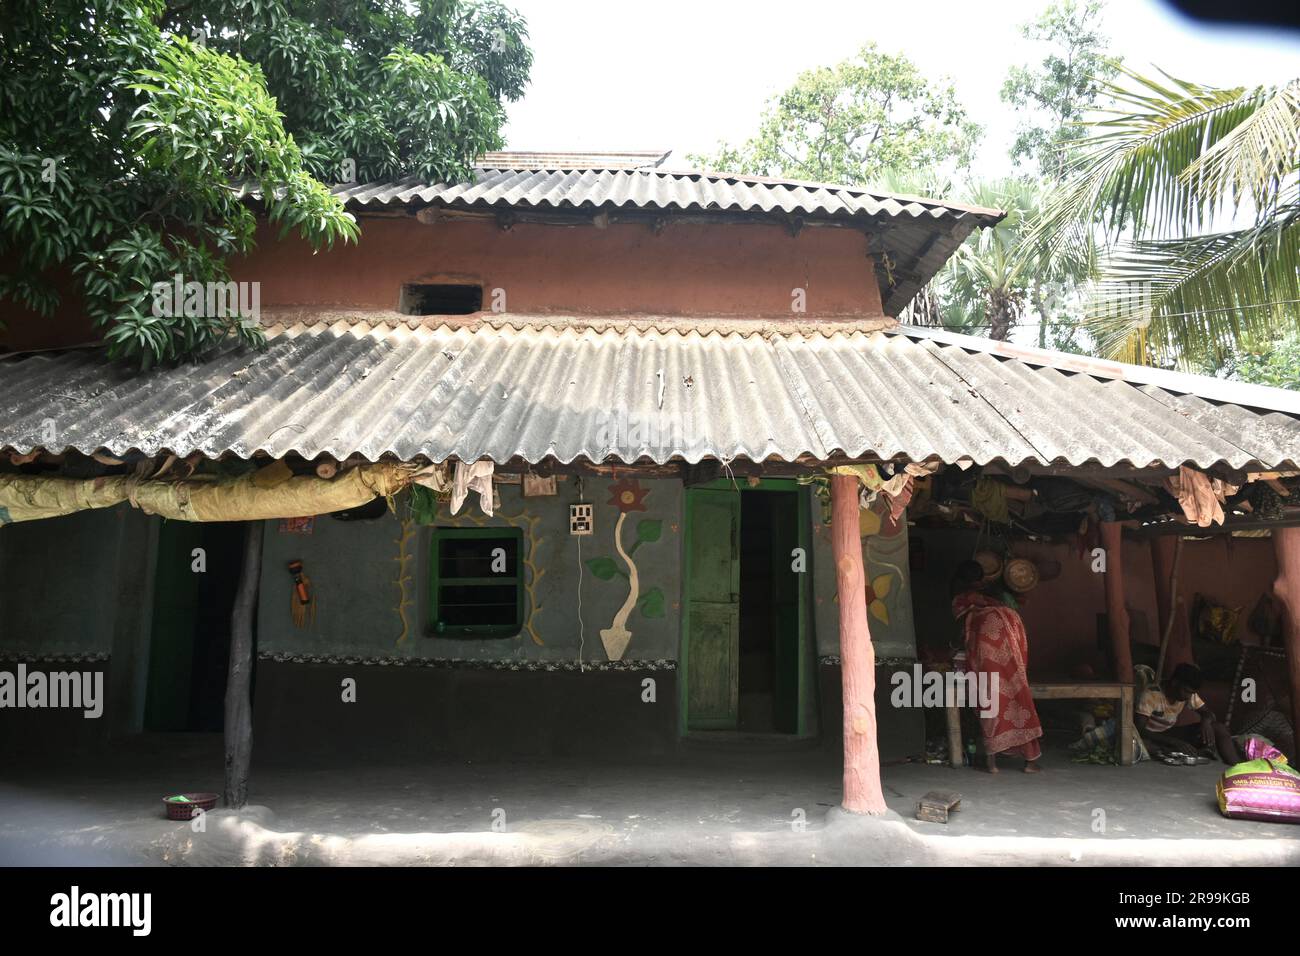 Une petite maison de village extérieure de l'inde rurale. Kishanganj Bengale occidental Inde Asie du Sud Pacifique Banque D'Images